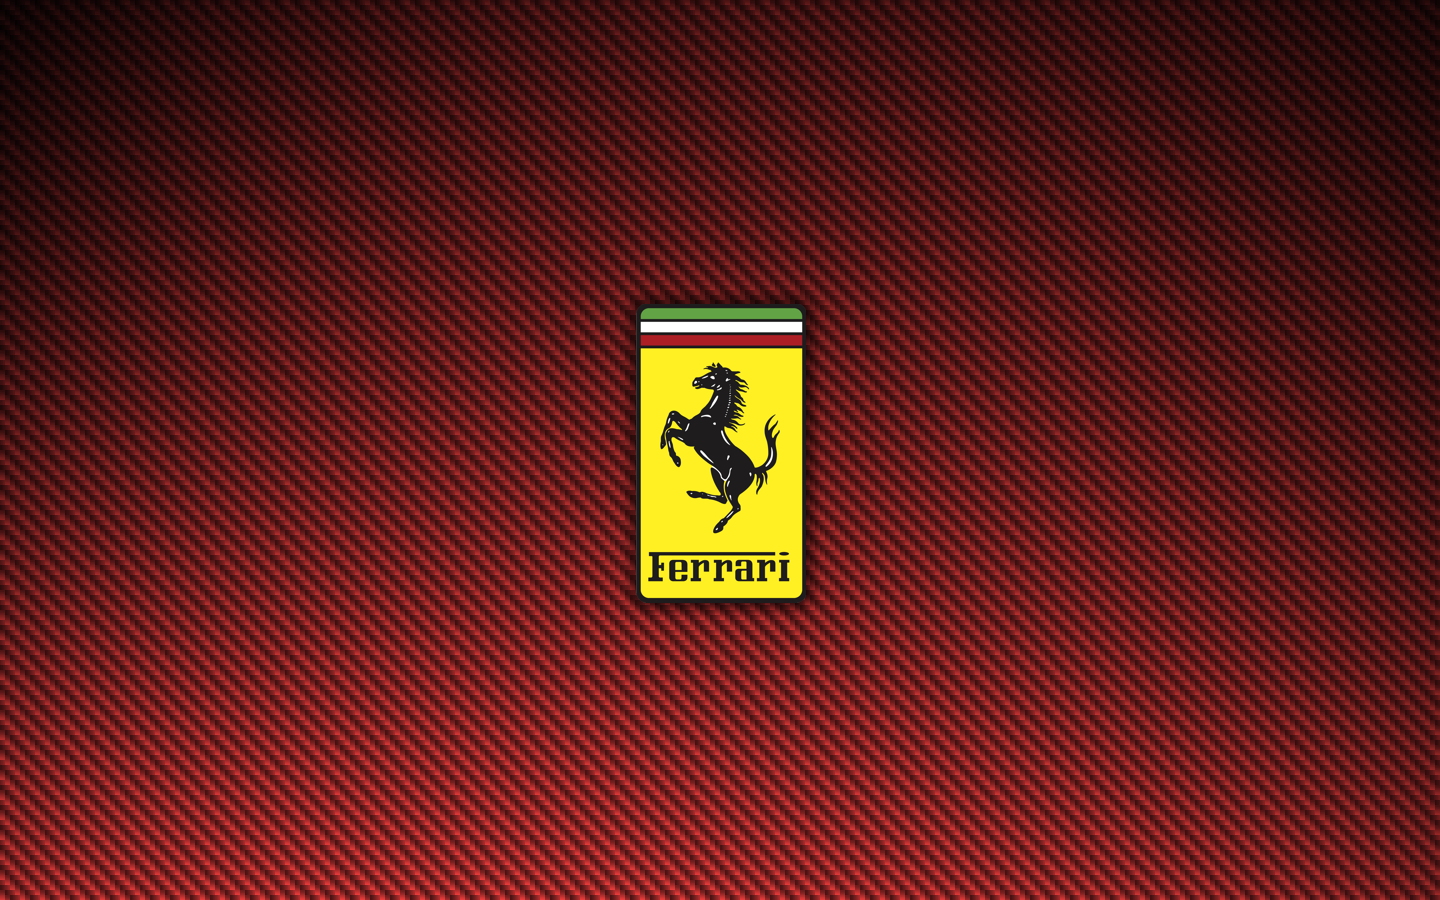 Red Ferrari Carbon Fiber Logo Wallpaper 8160 1440 x 900 1440x900